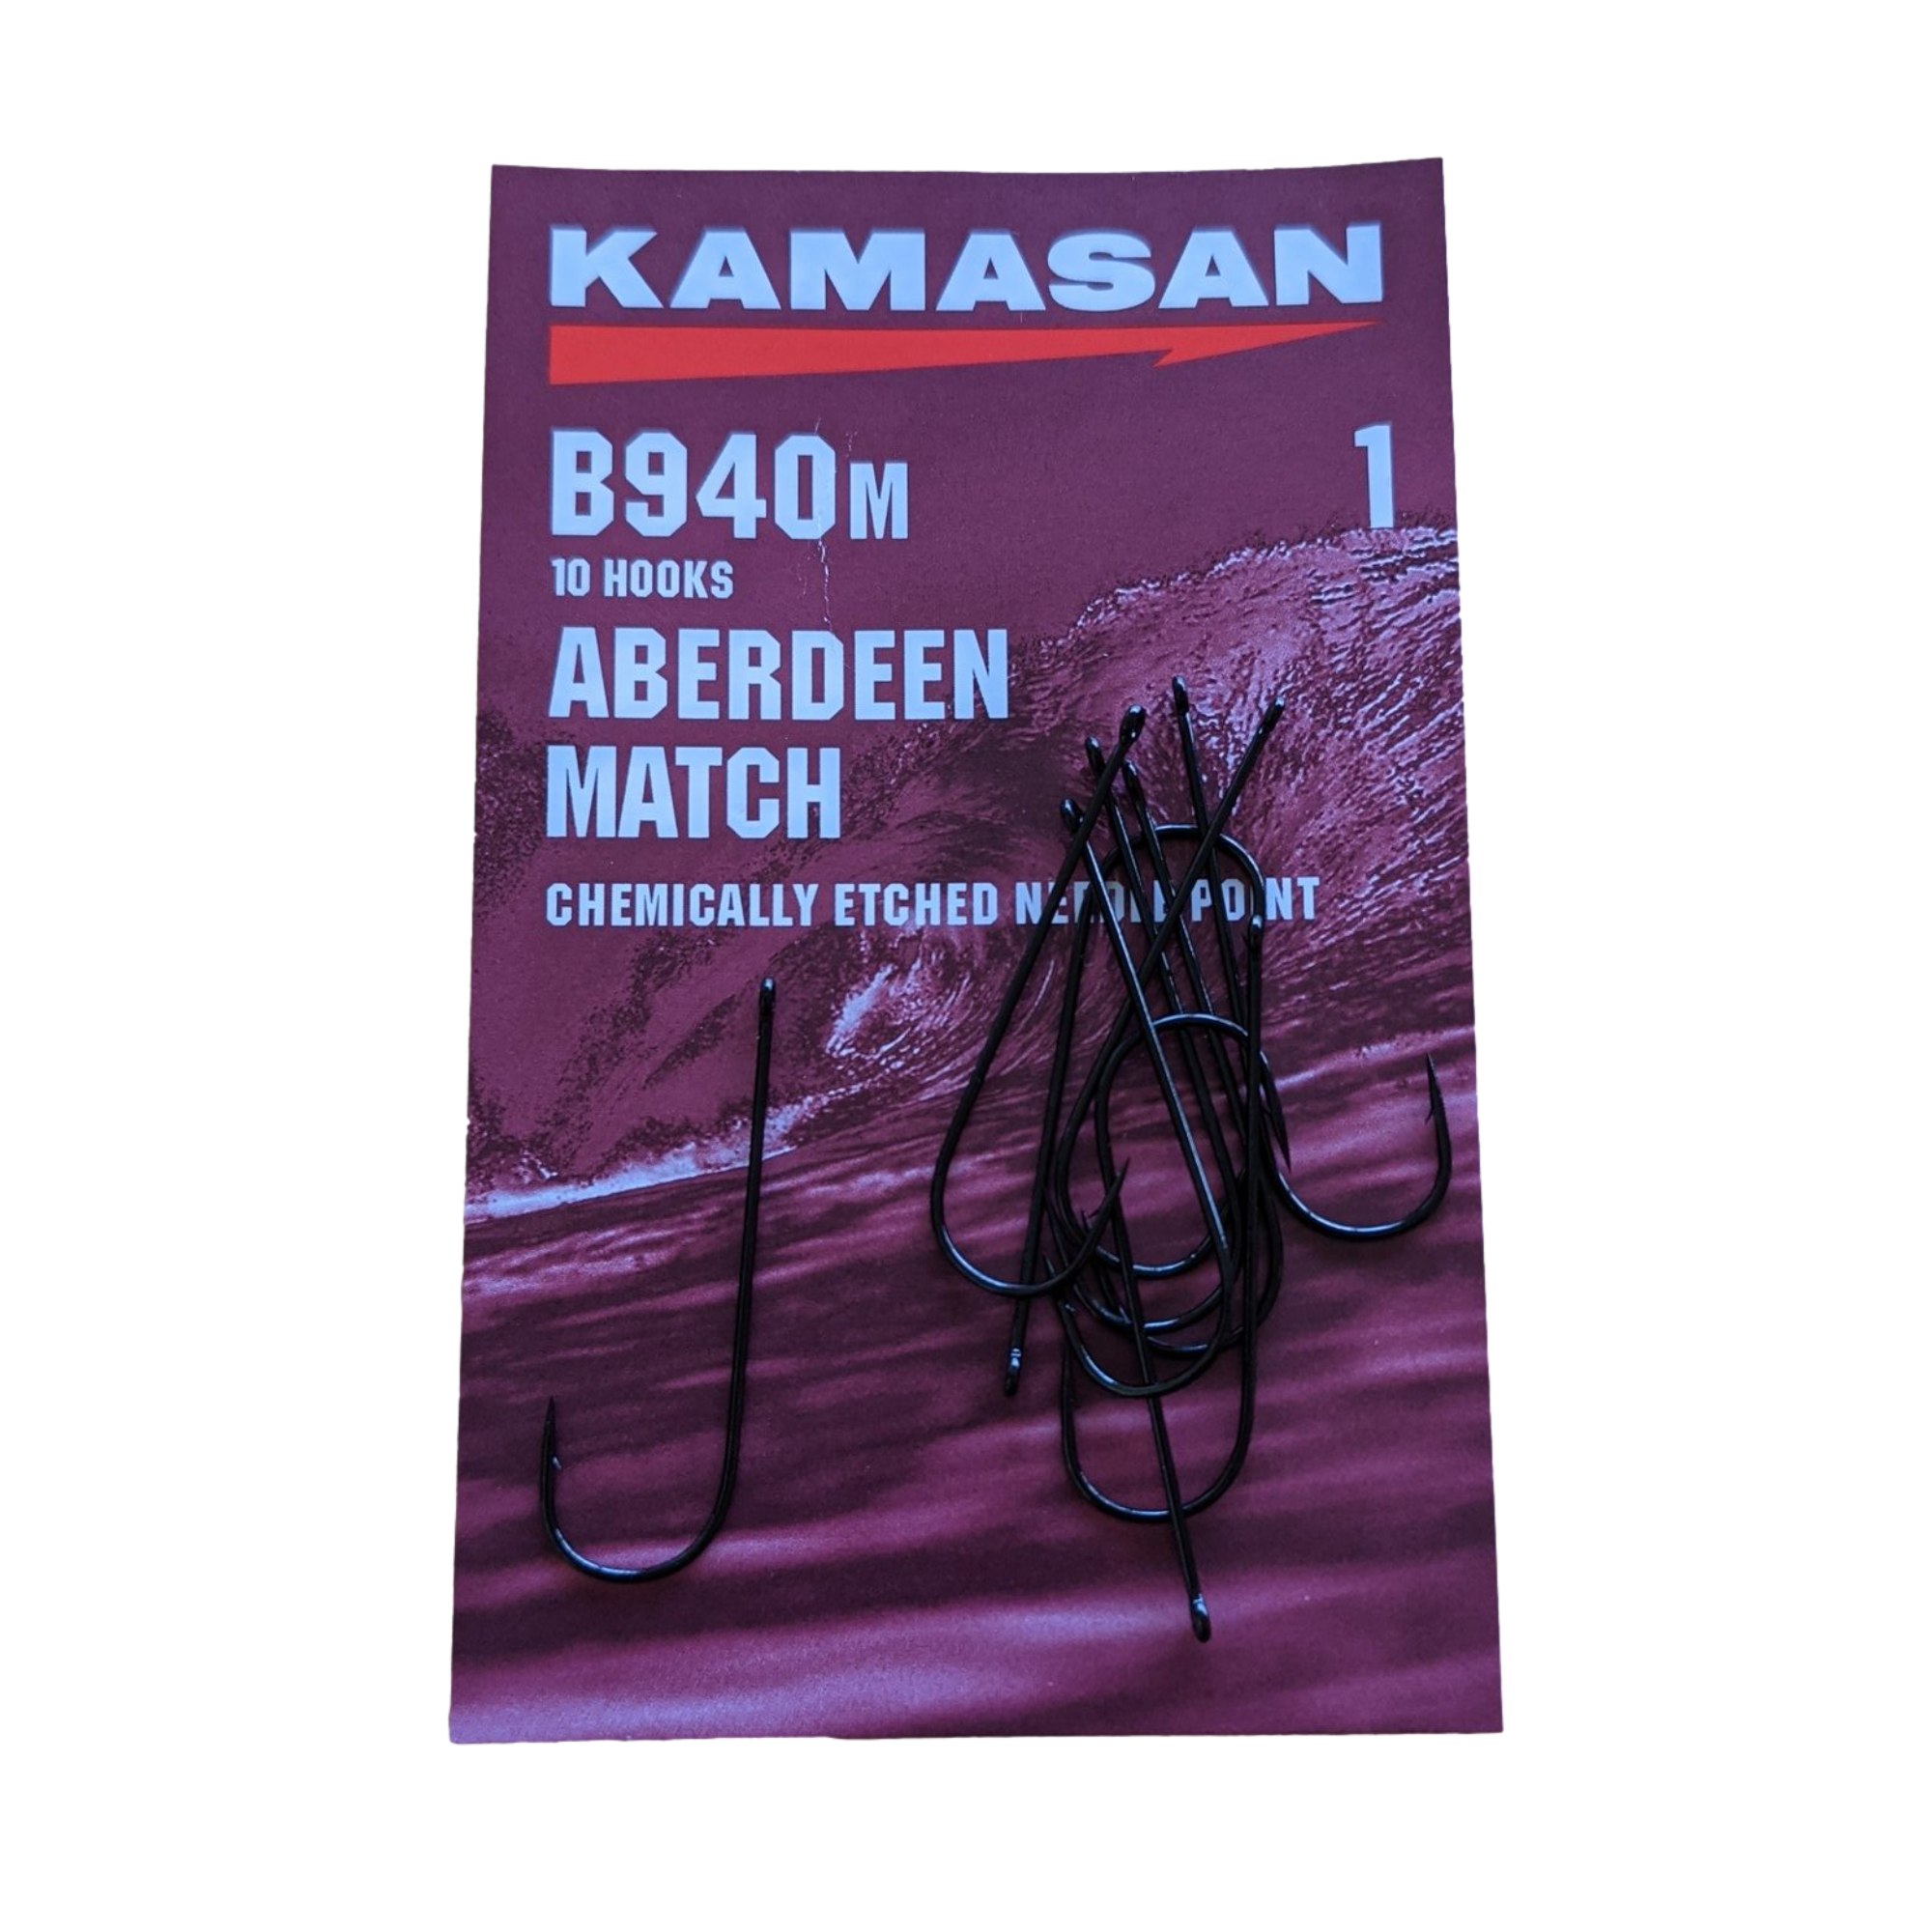 Kamasan B940M Aberdeen Match Sea Fishing Hooks New 